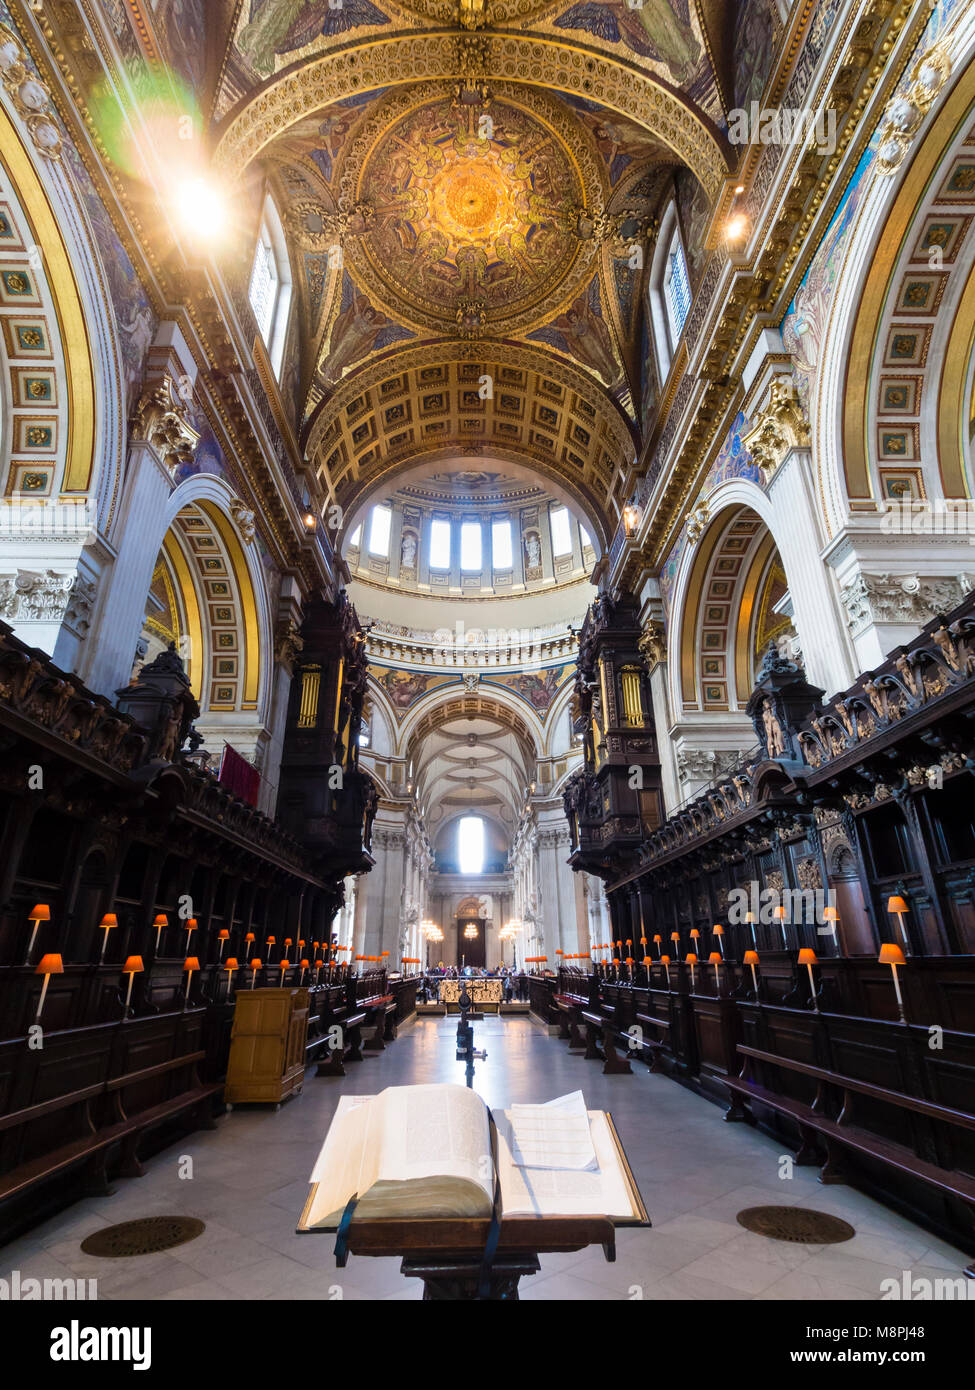 Londres, UK - 2 septembre 2017 : l'intérieur de Londres, St Paul du Cahthedral, siège de l'évêque de Londres et les principales attractions touristiques de Londres. Banque D'Images